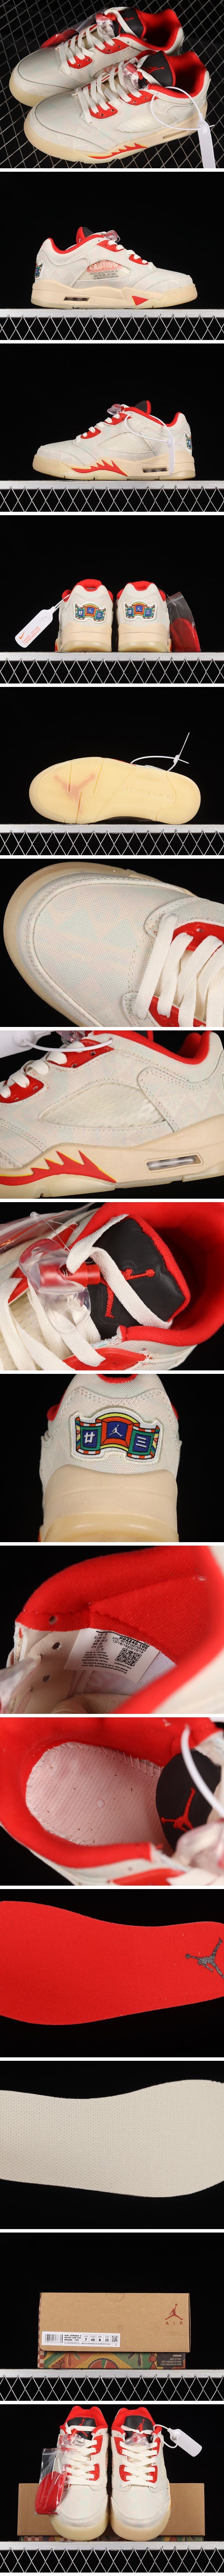 Nike Air Jordan 5 Low 